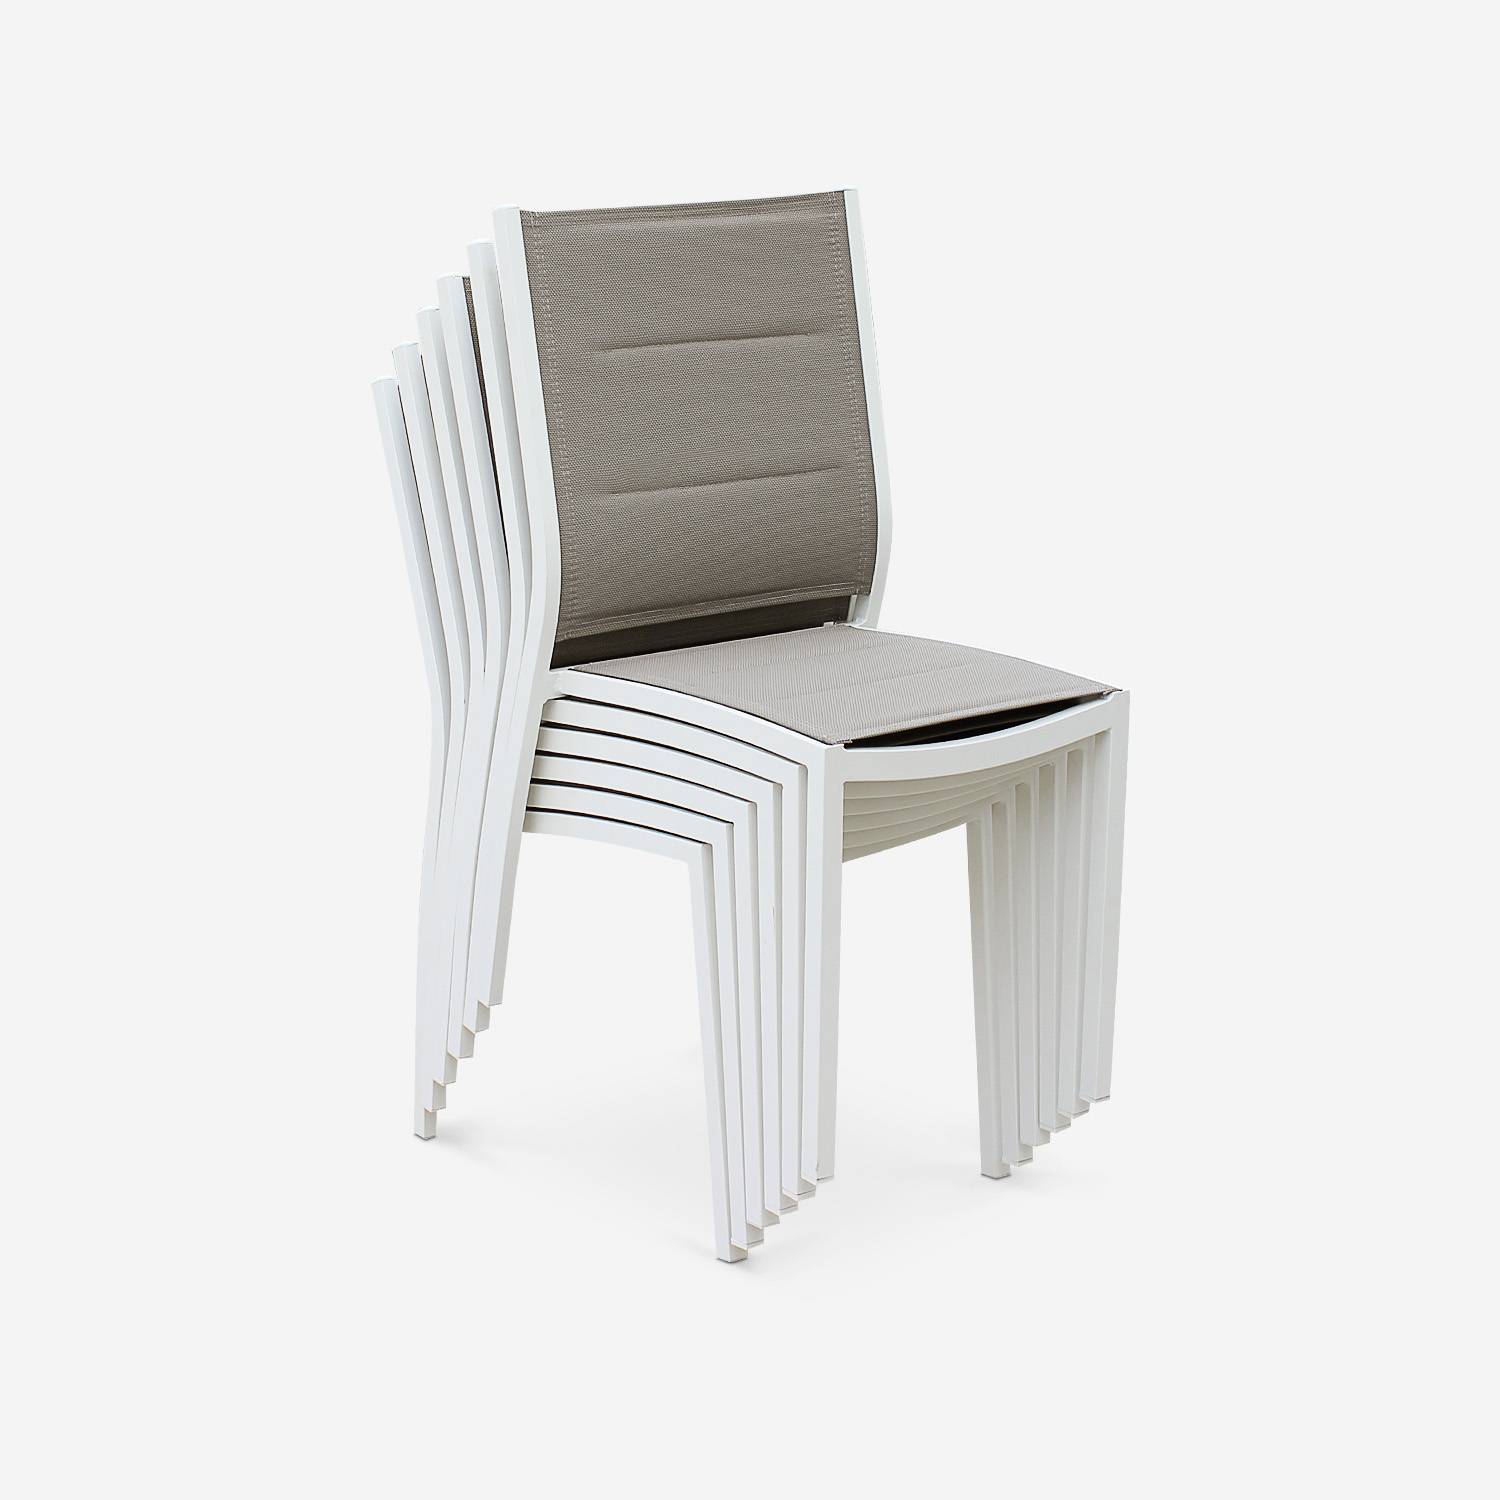 Coppia di sedie Chicago/Odenton in alluminio bianco e textilene colore marrone talpa Photo4